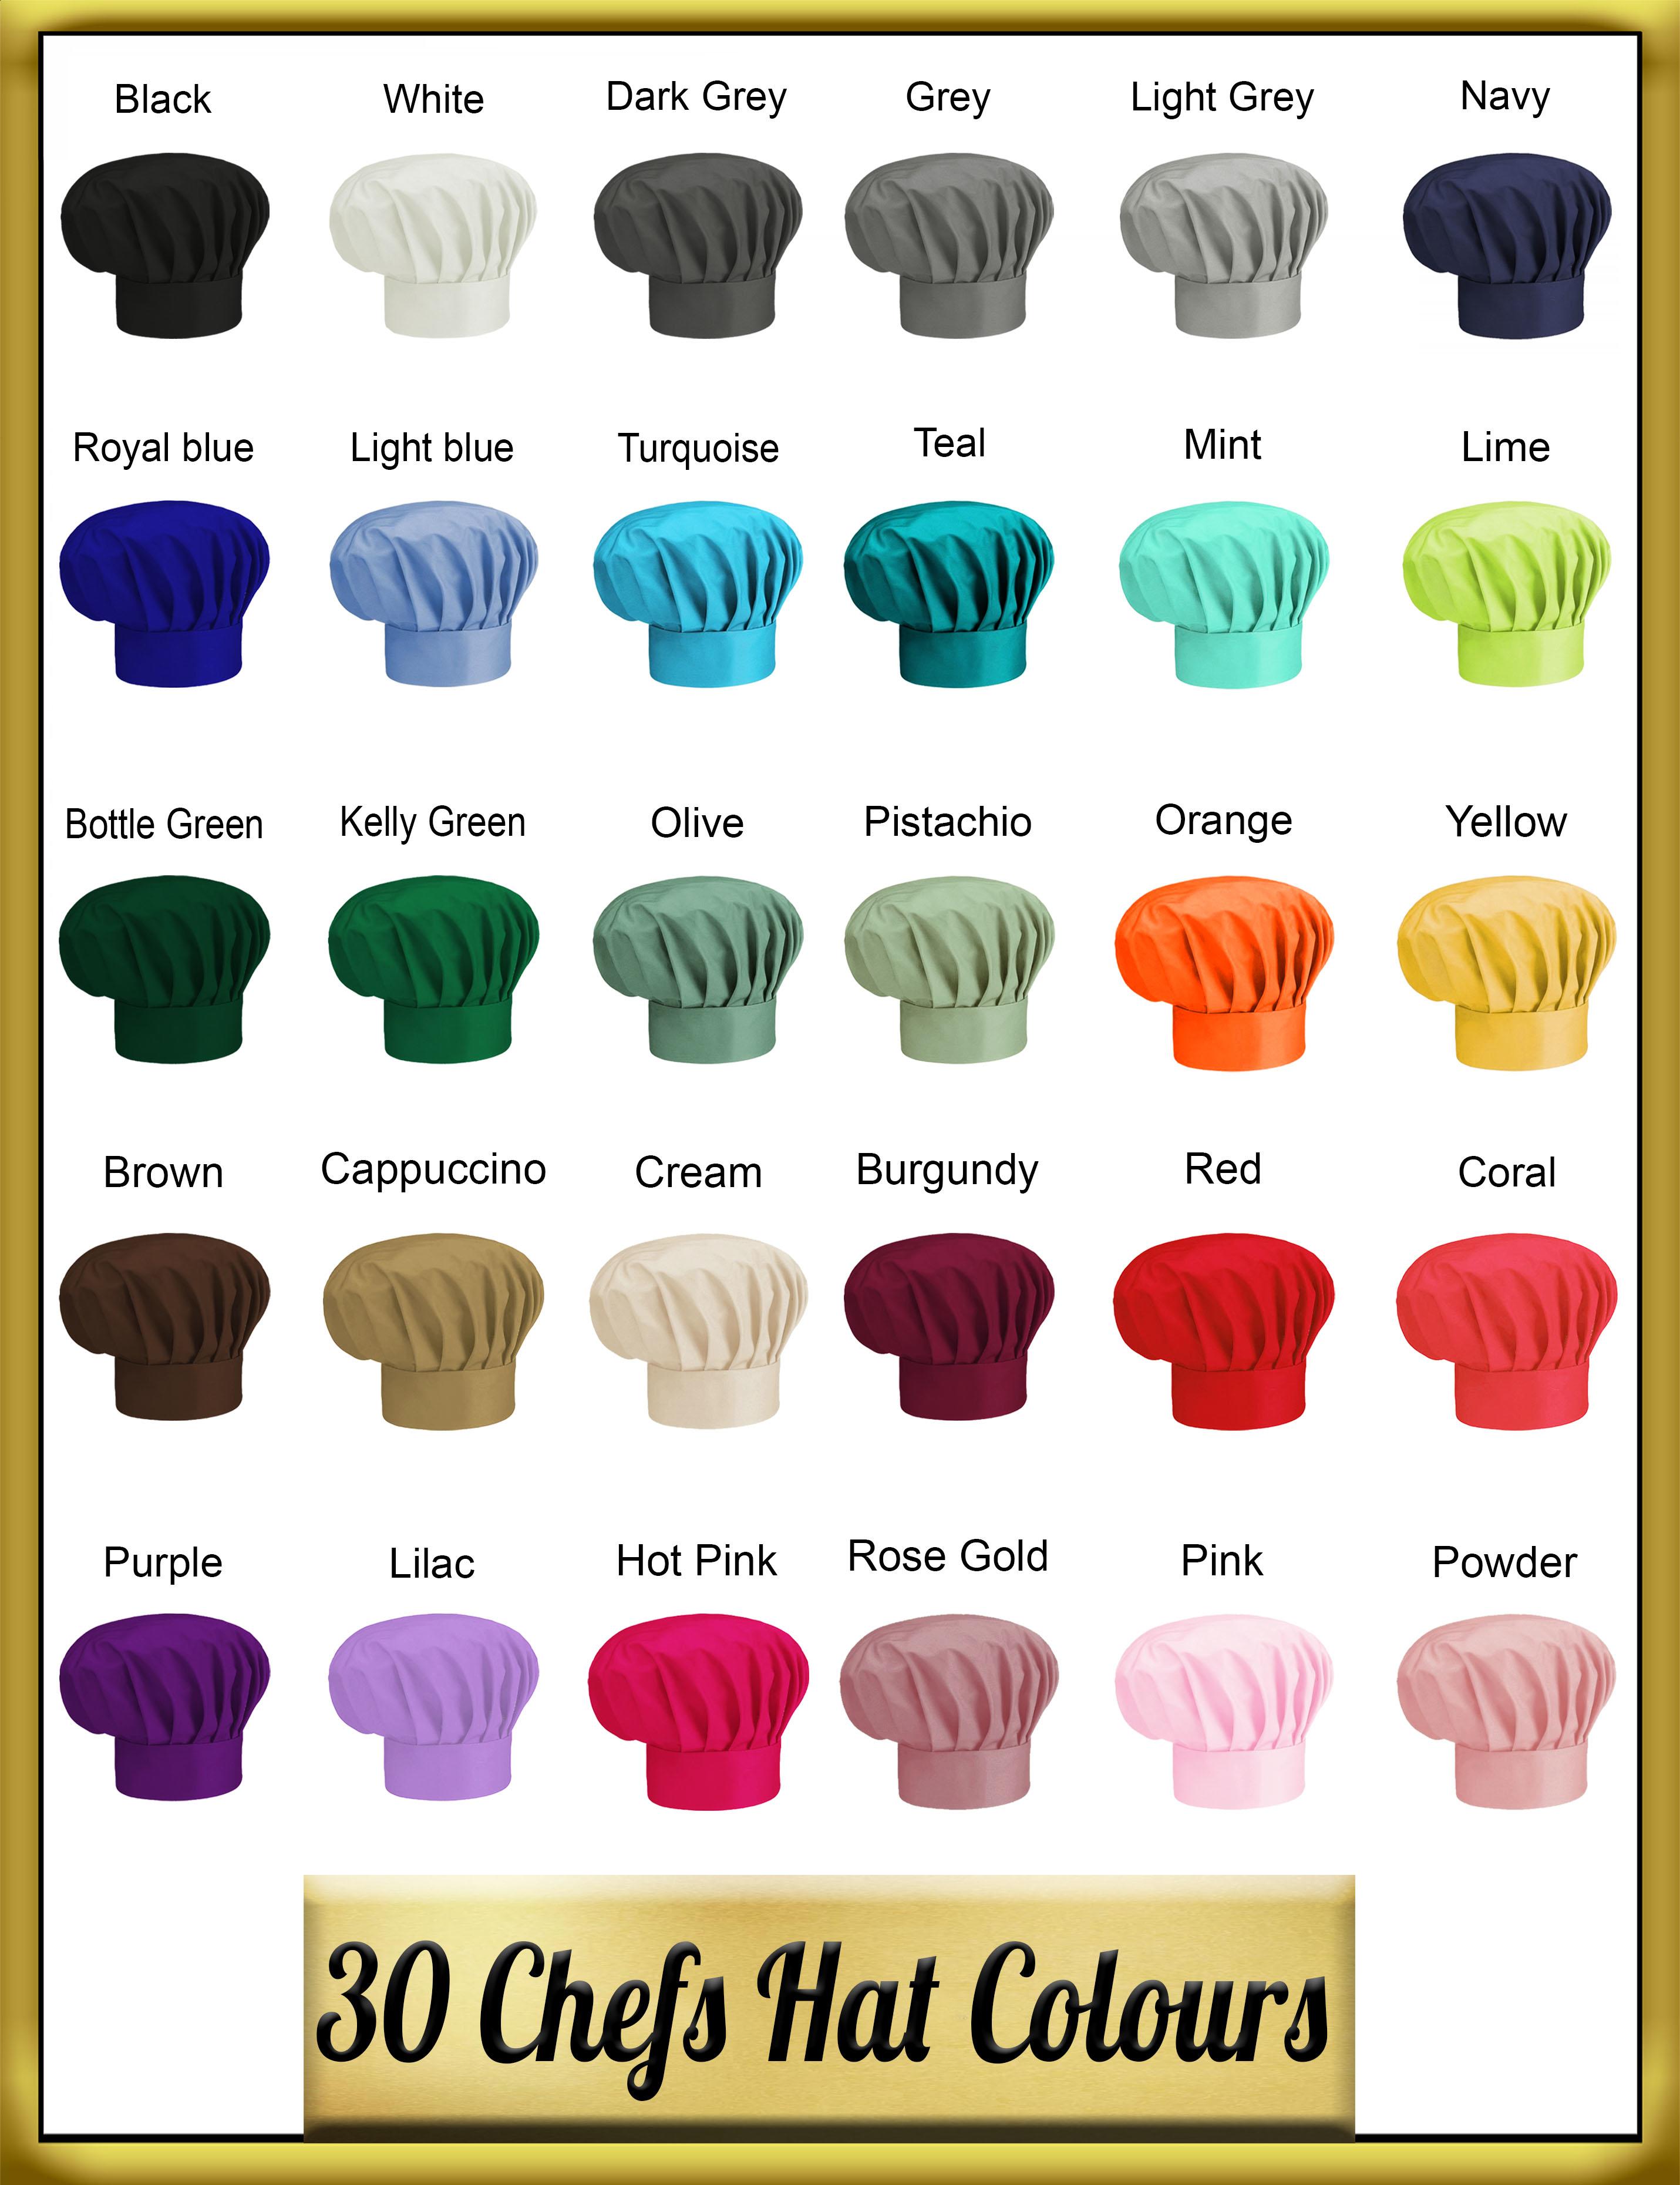 Chef hat colours